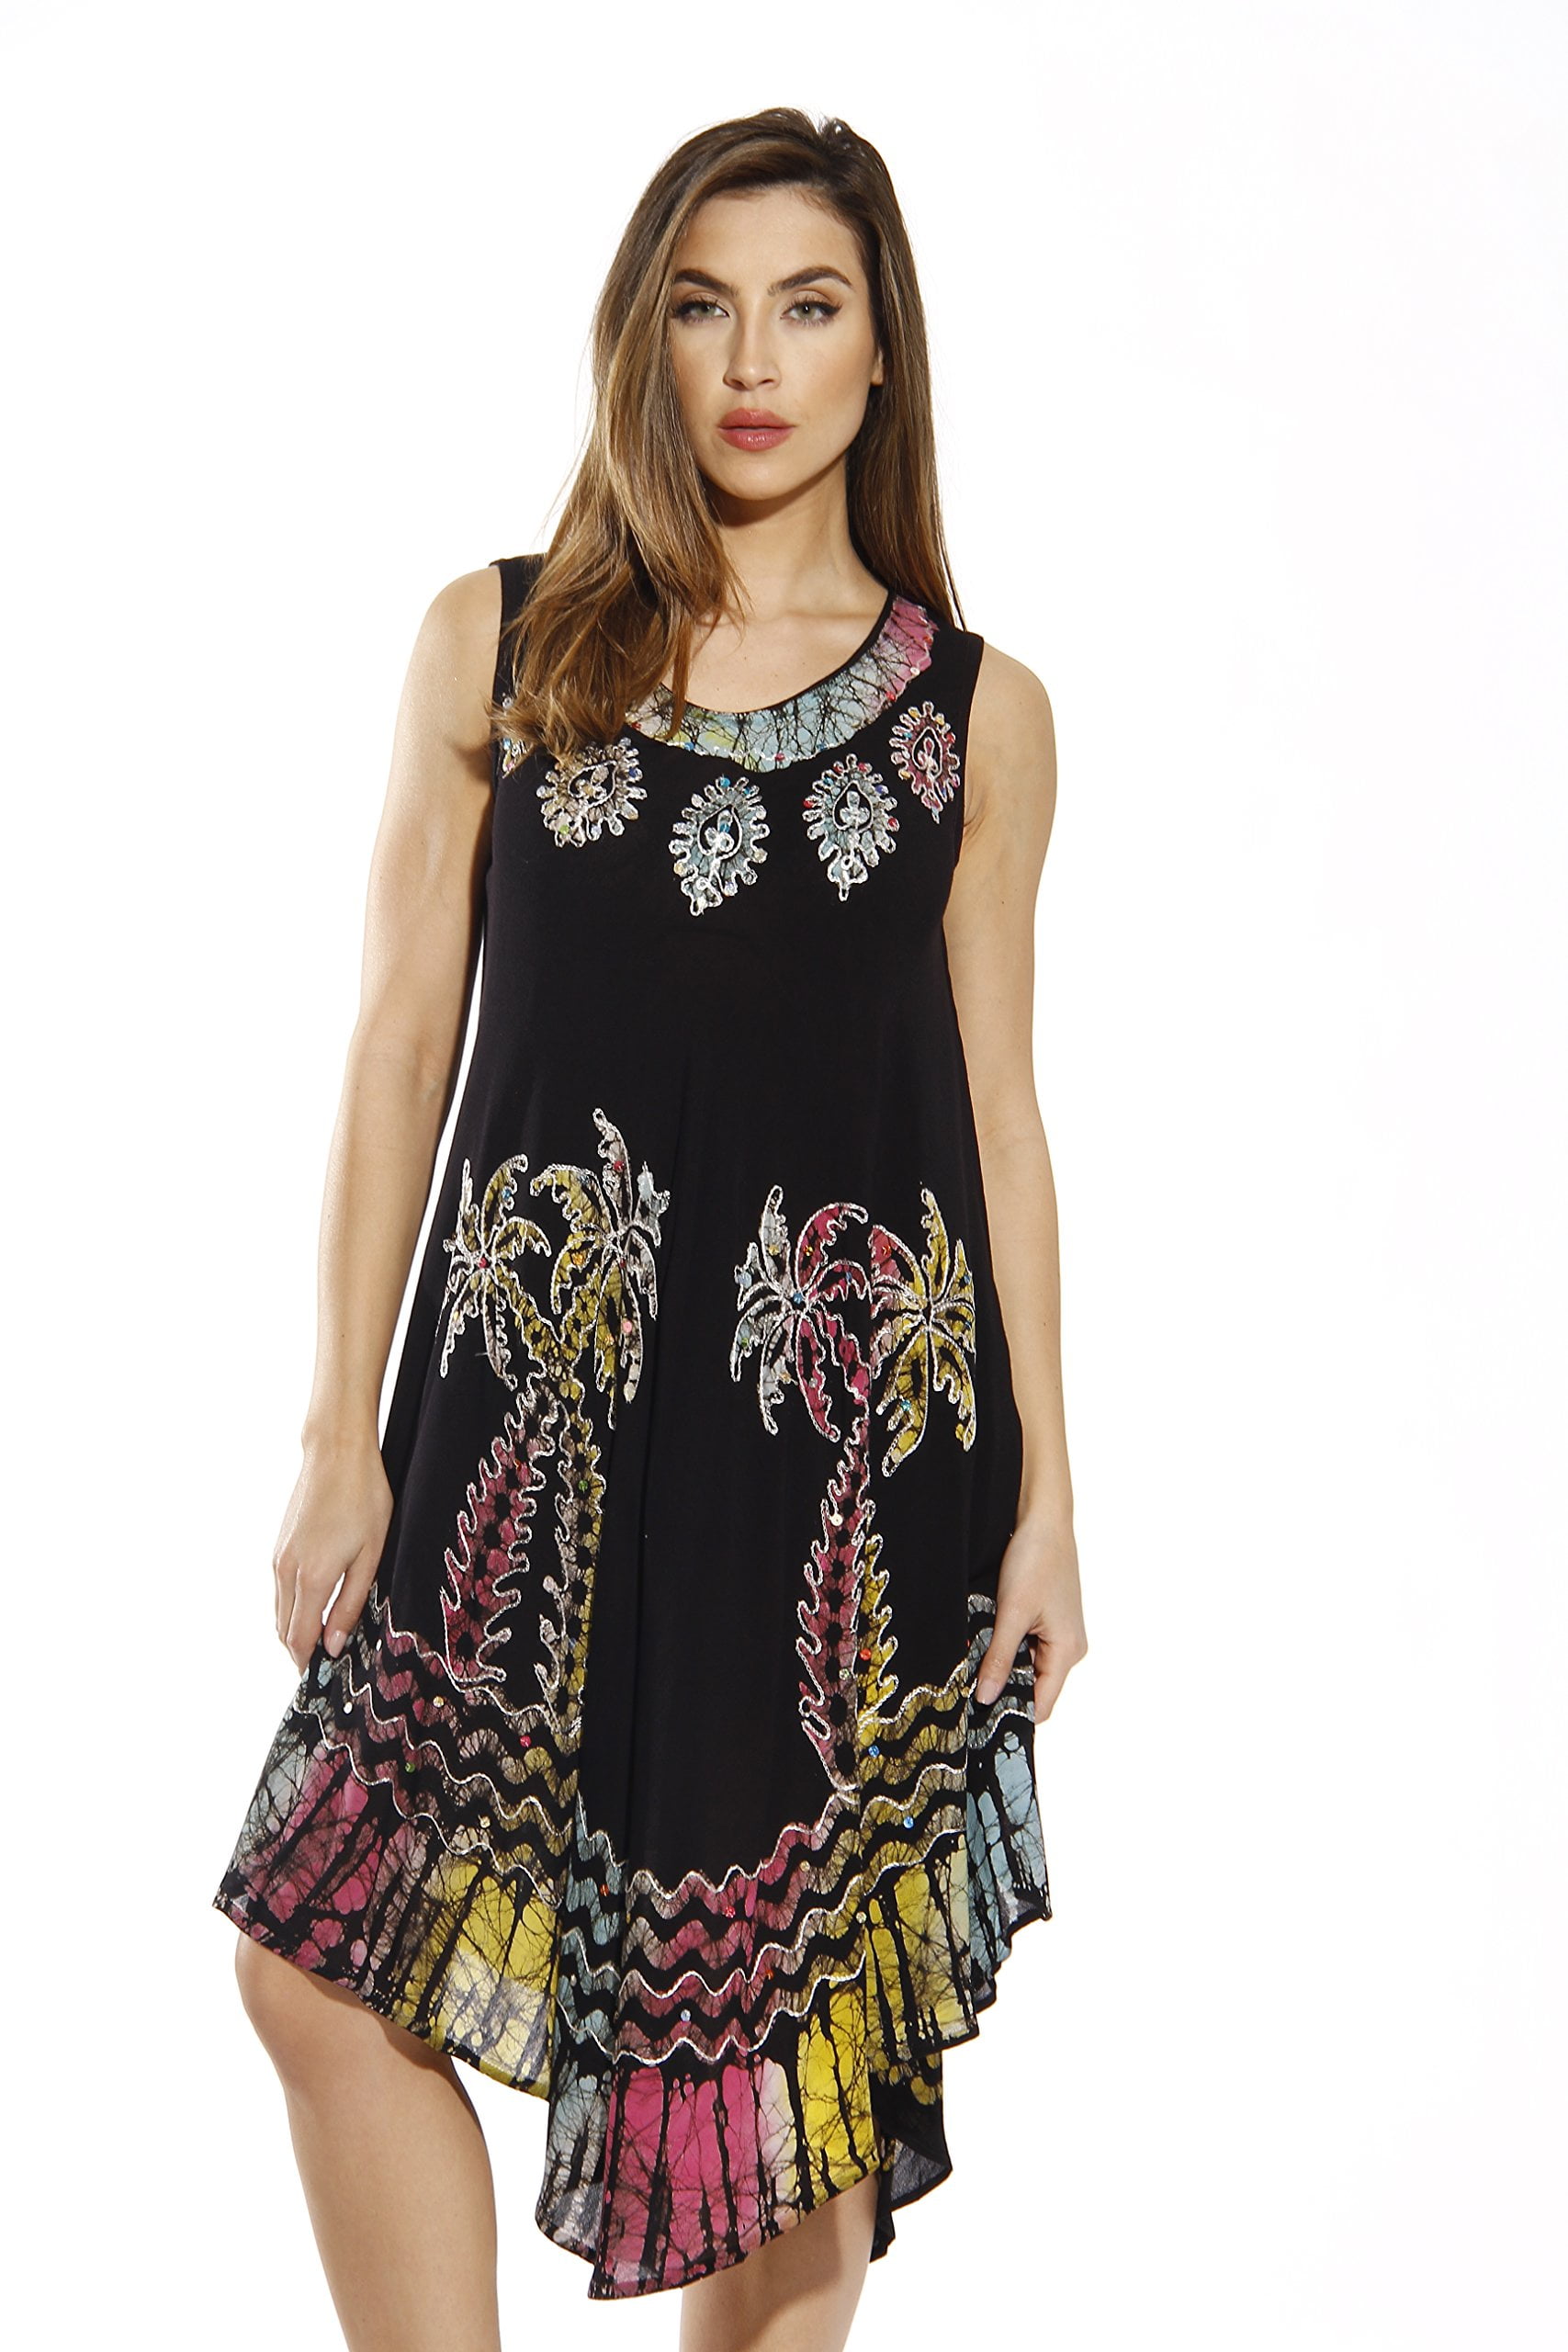 Riviera Sun Dress / Dresses for Women (Black Multi 1, 2X) - Walmart.com